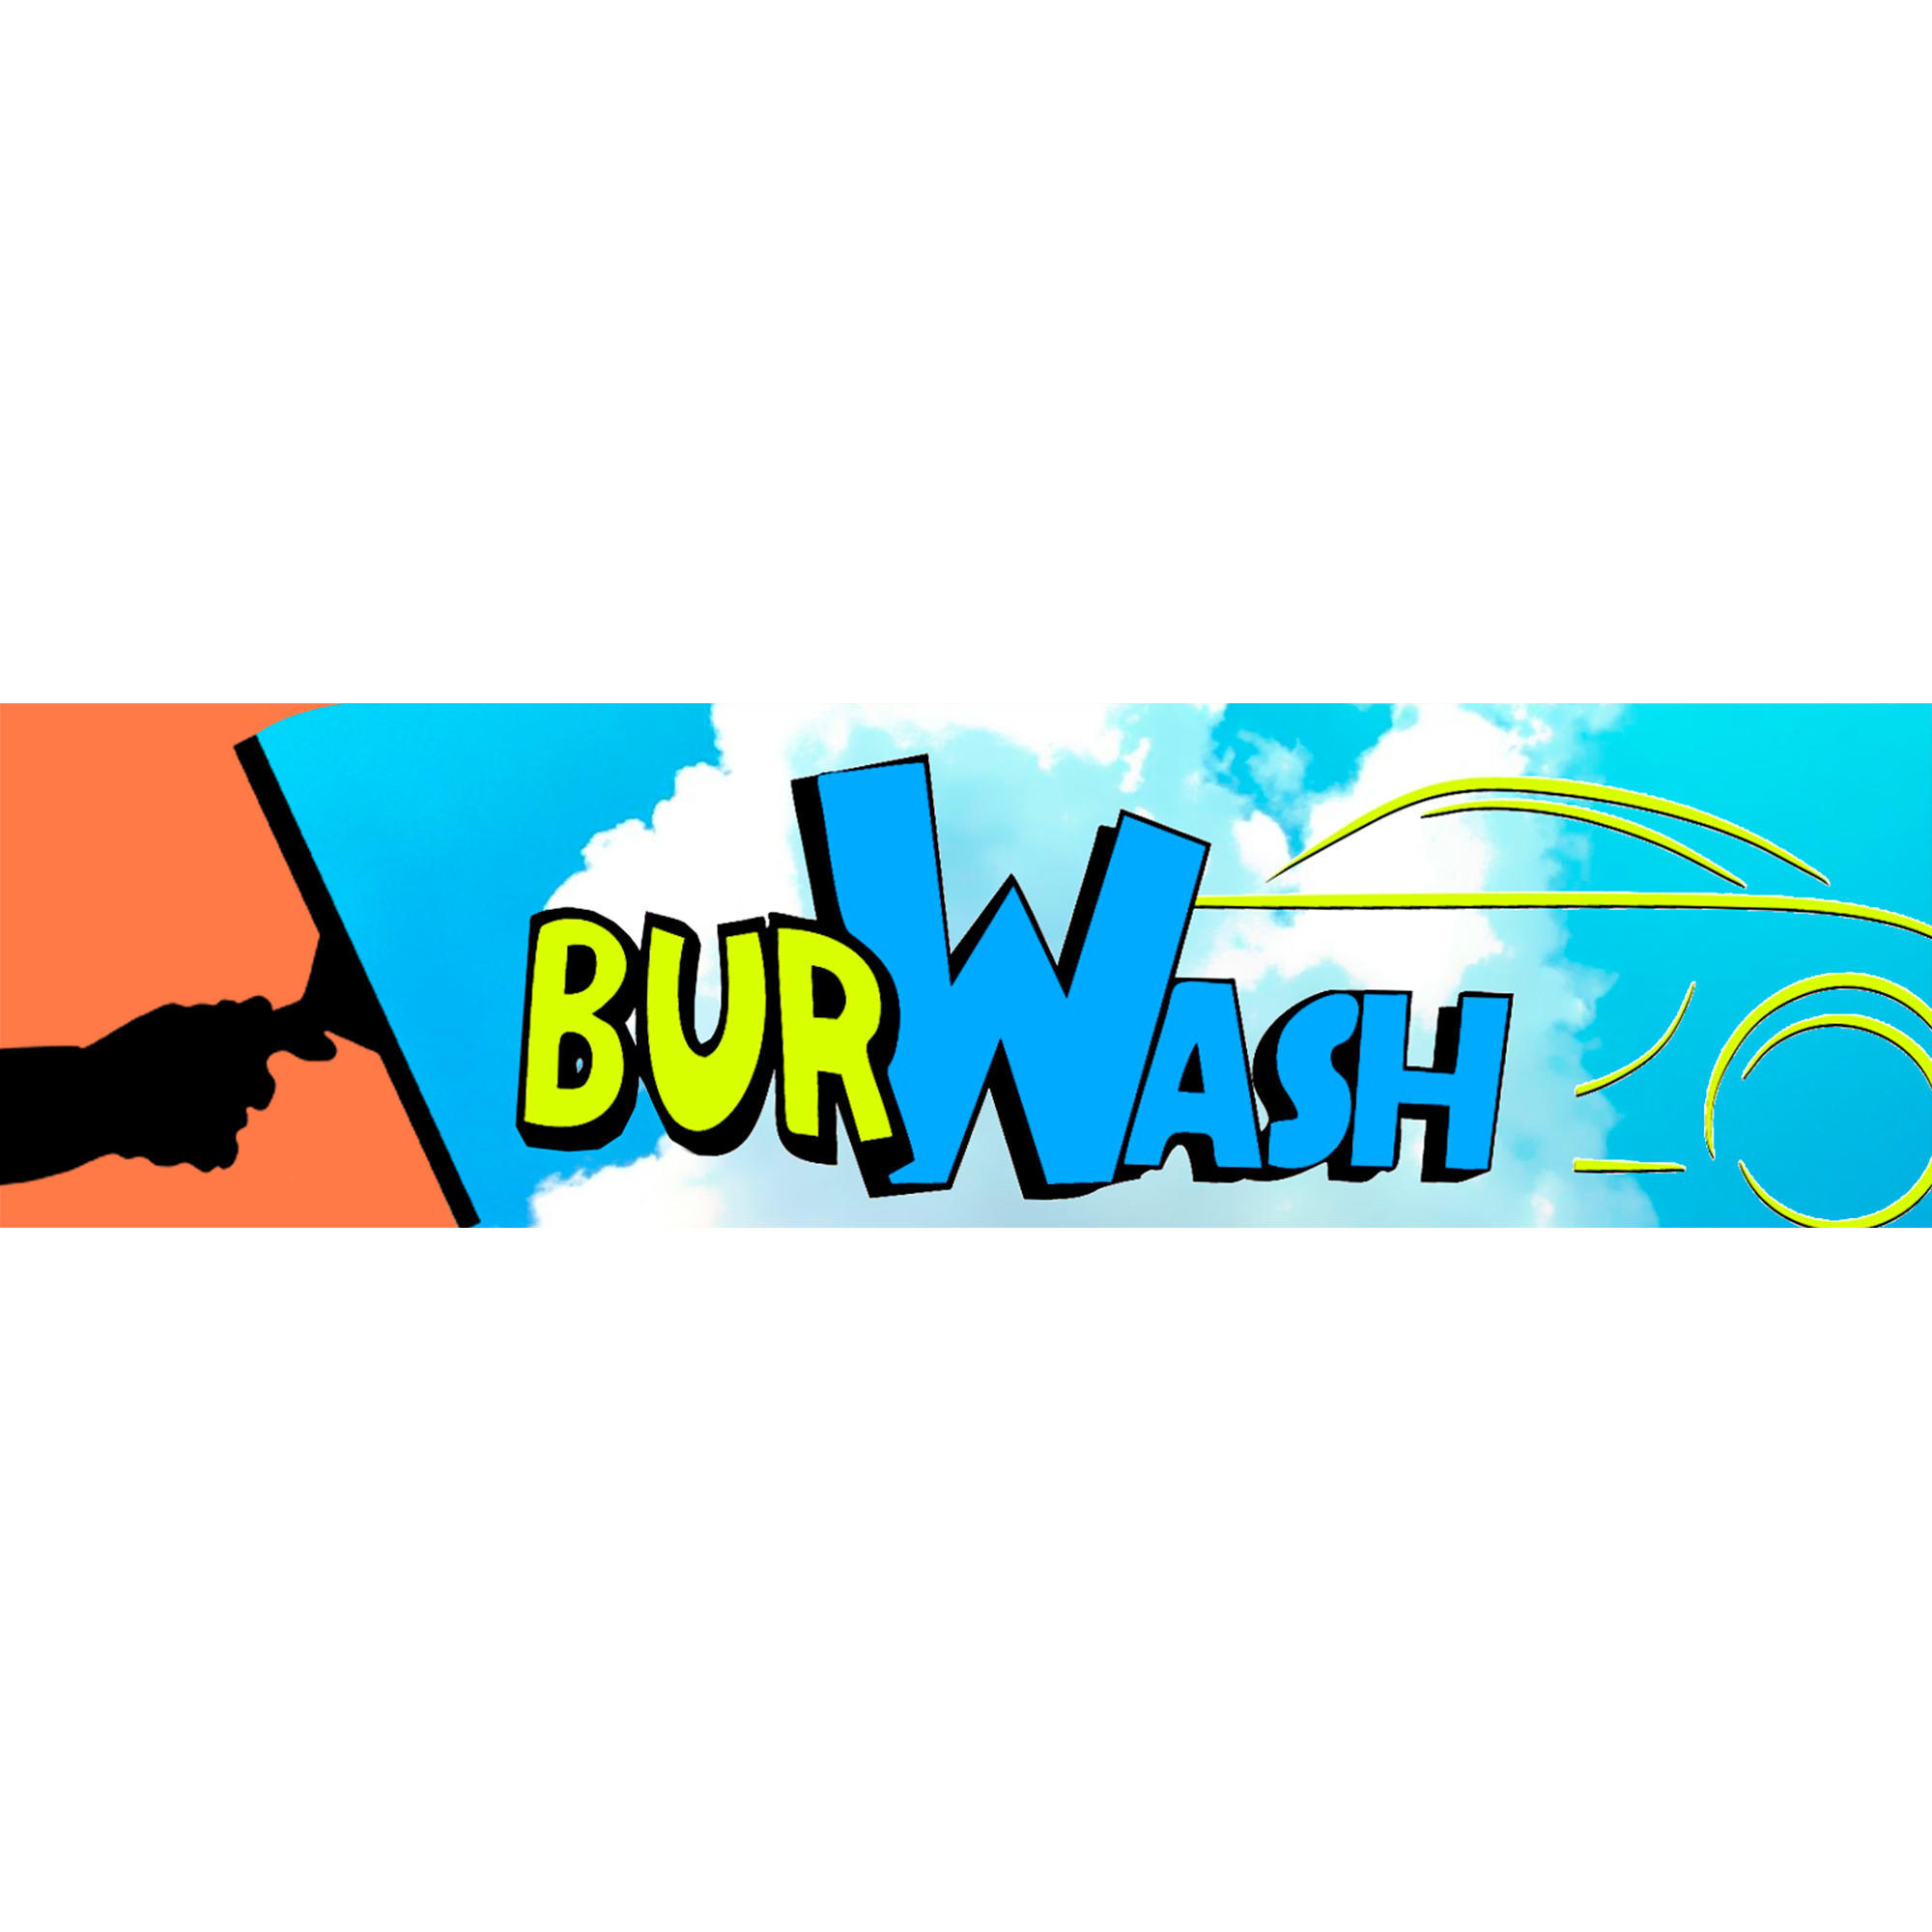 BURWASH Burgos